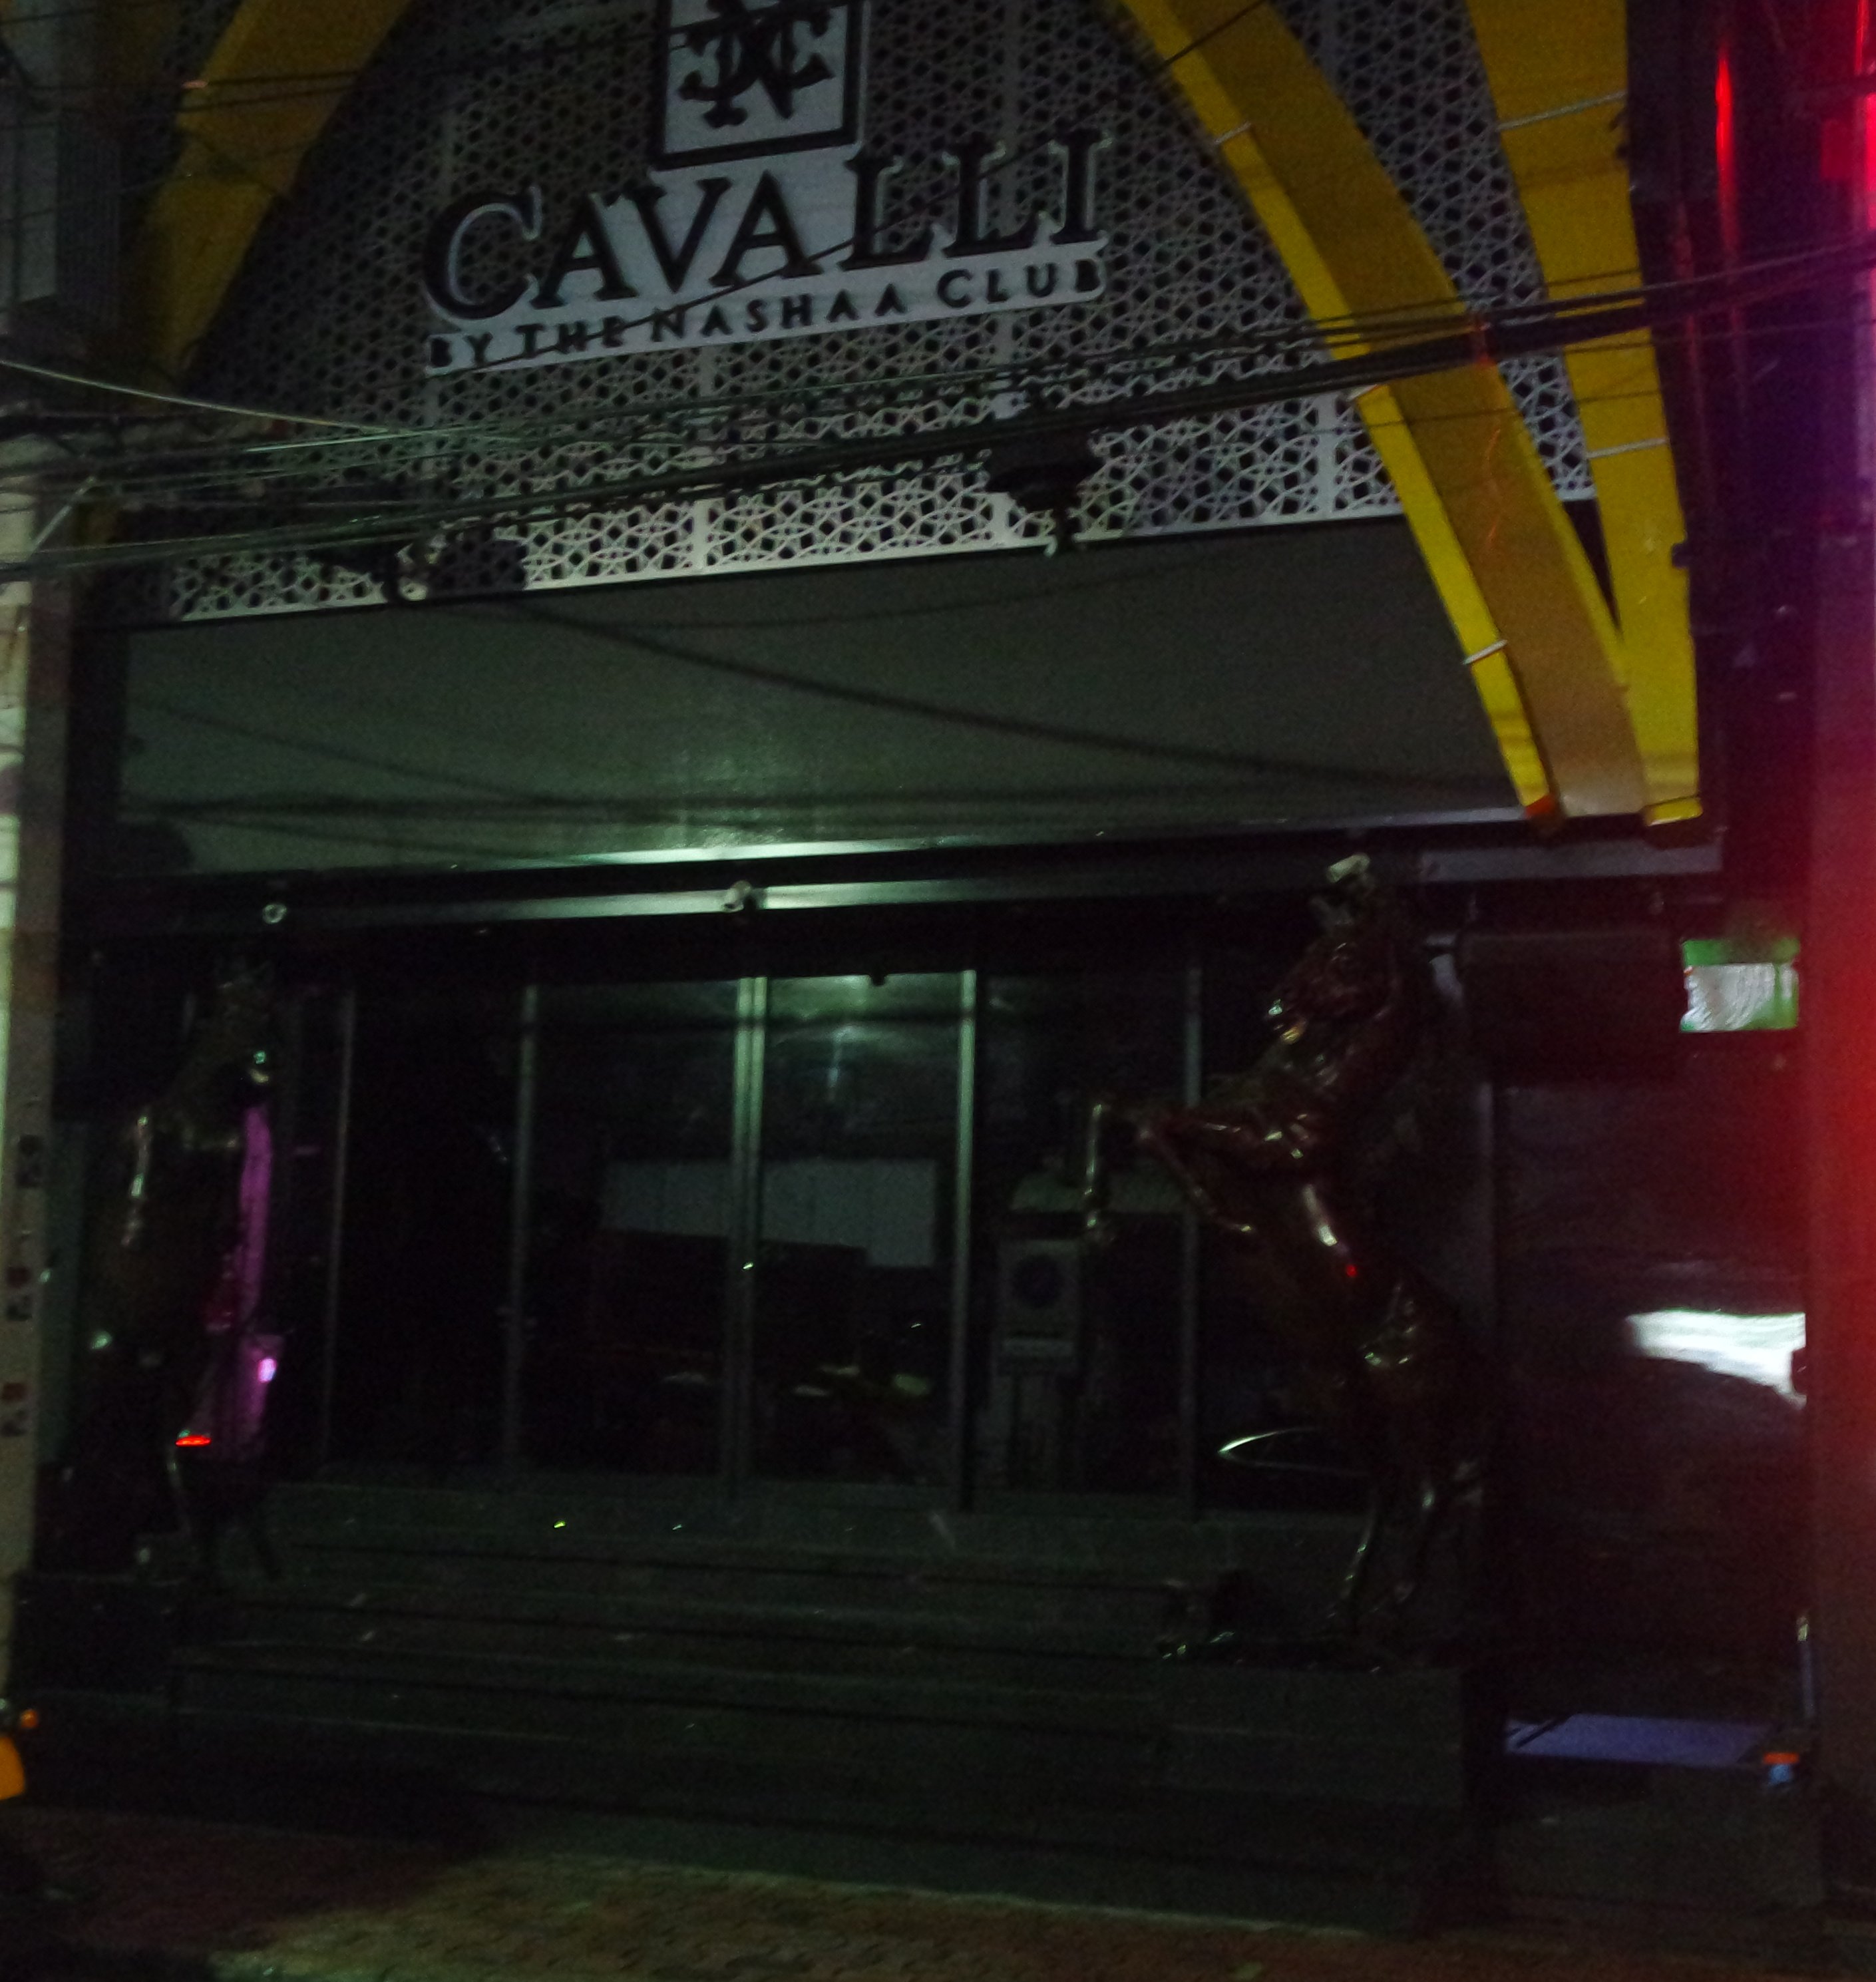 Cavalli closed